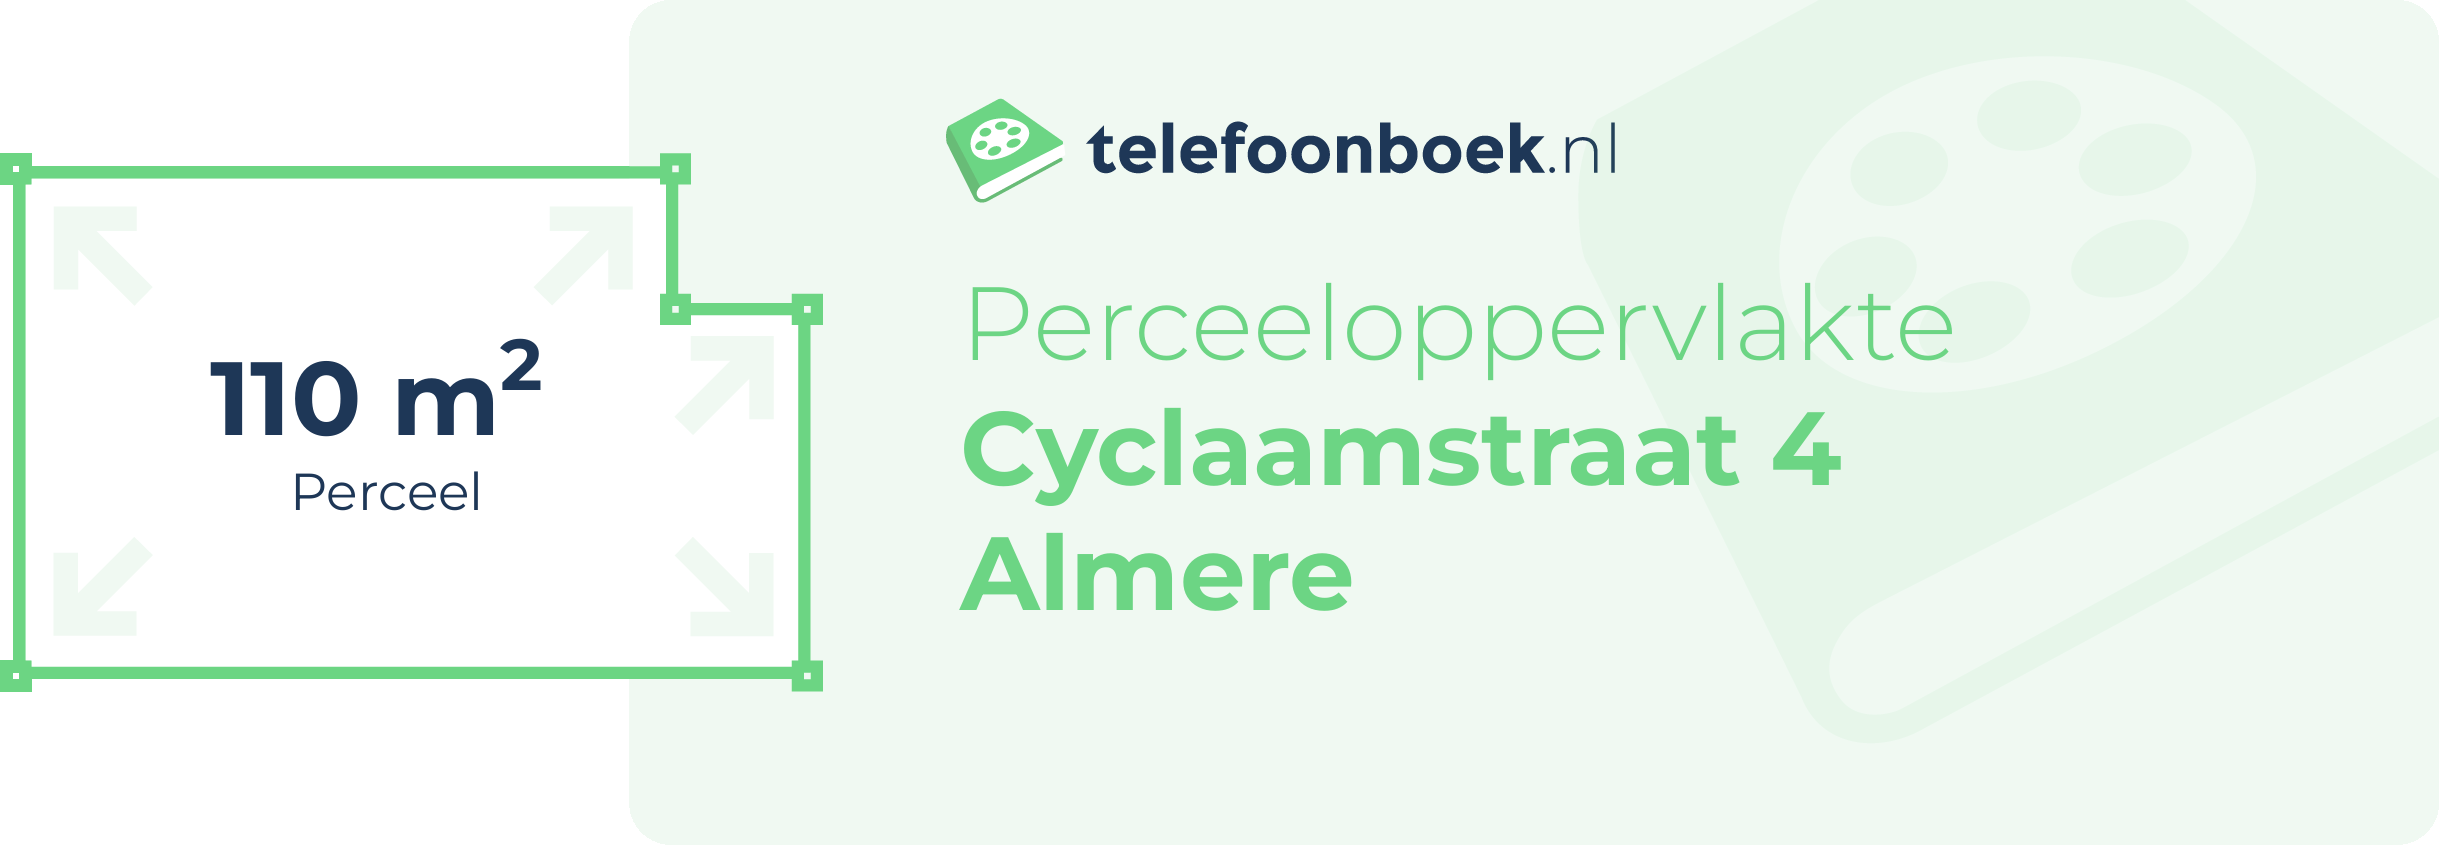 Perceeloppervlakte Cyclaamstraat 4 Almere